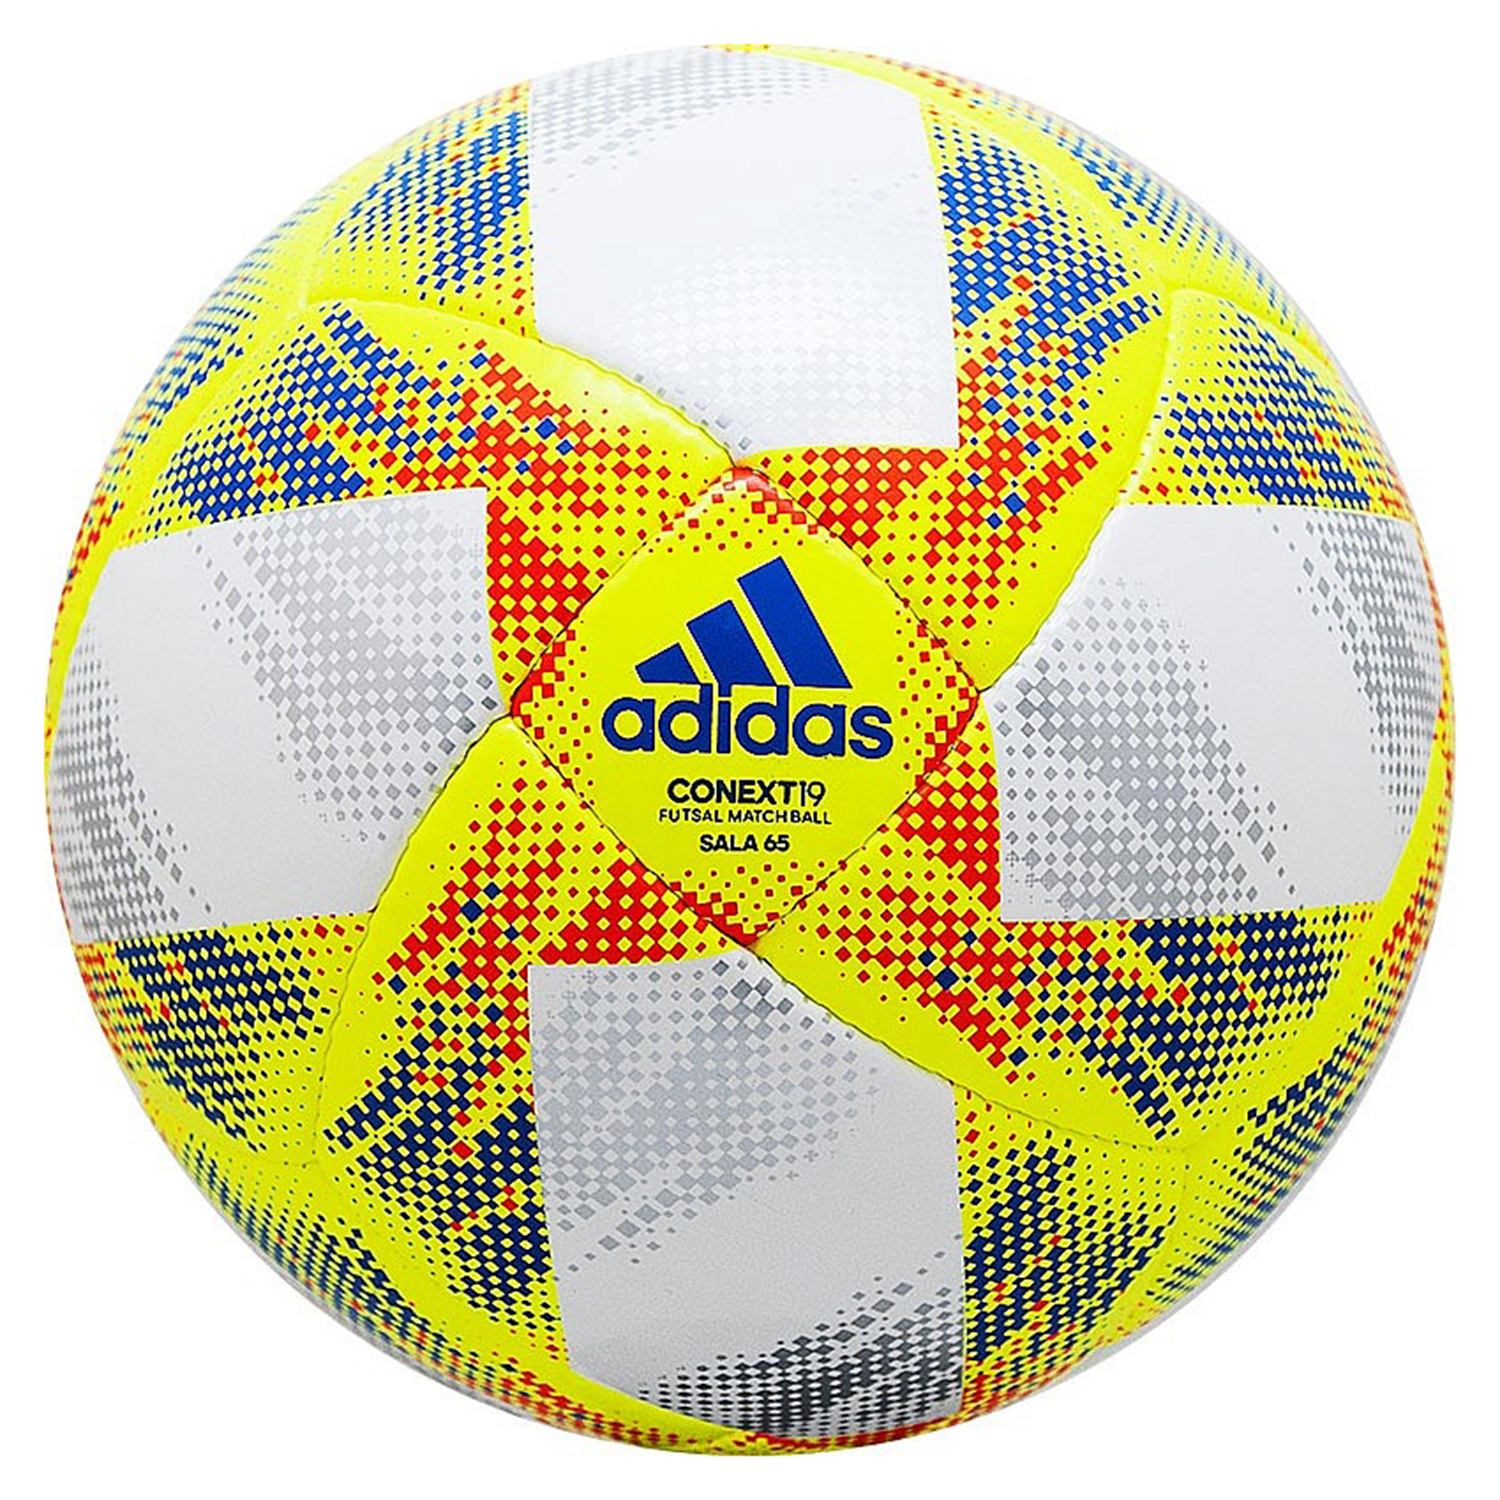 Adidas Conext 19 Sala65 Футбольные мячи DN8644 купите в интернет магазине  Professionalsport в Москве с доставкой по РФ